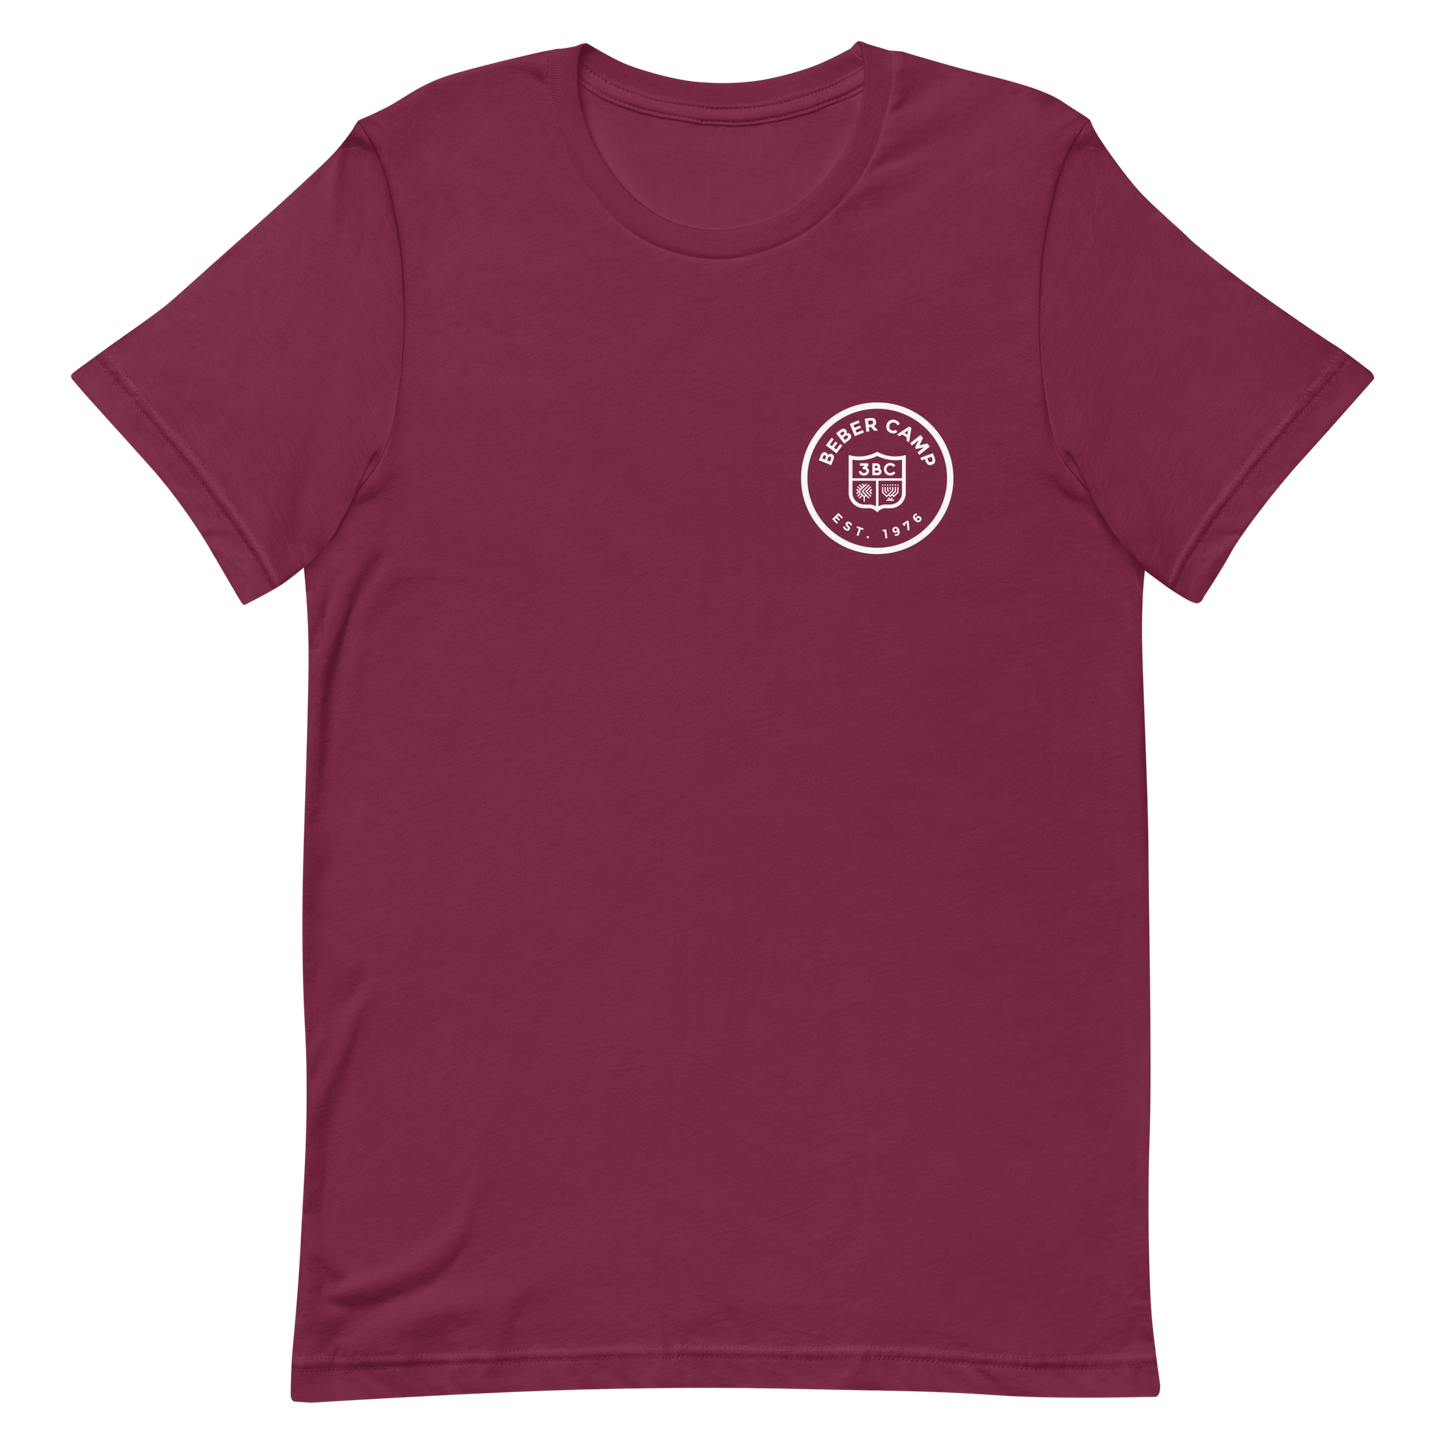 #BeberParent Unisex Adult T-Shirt